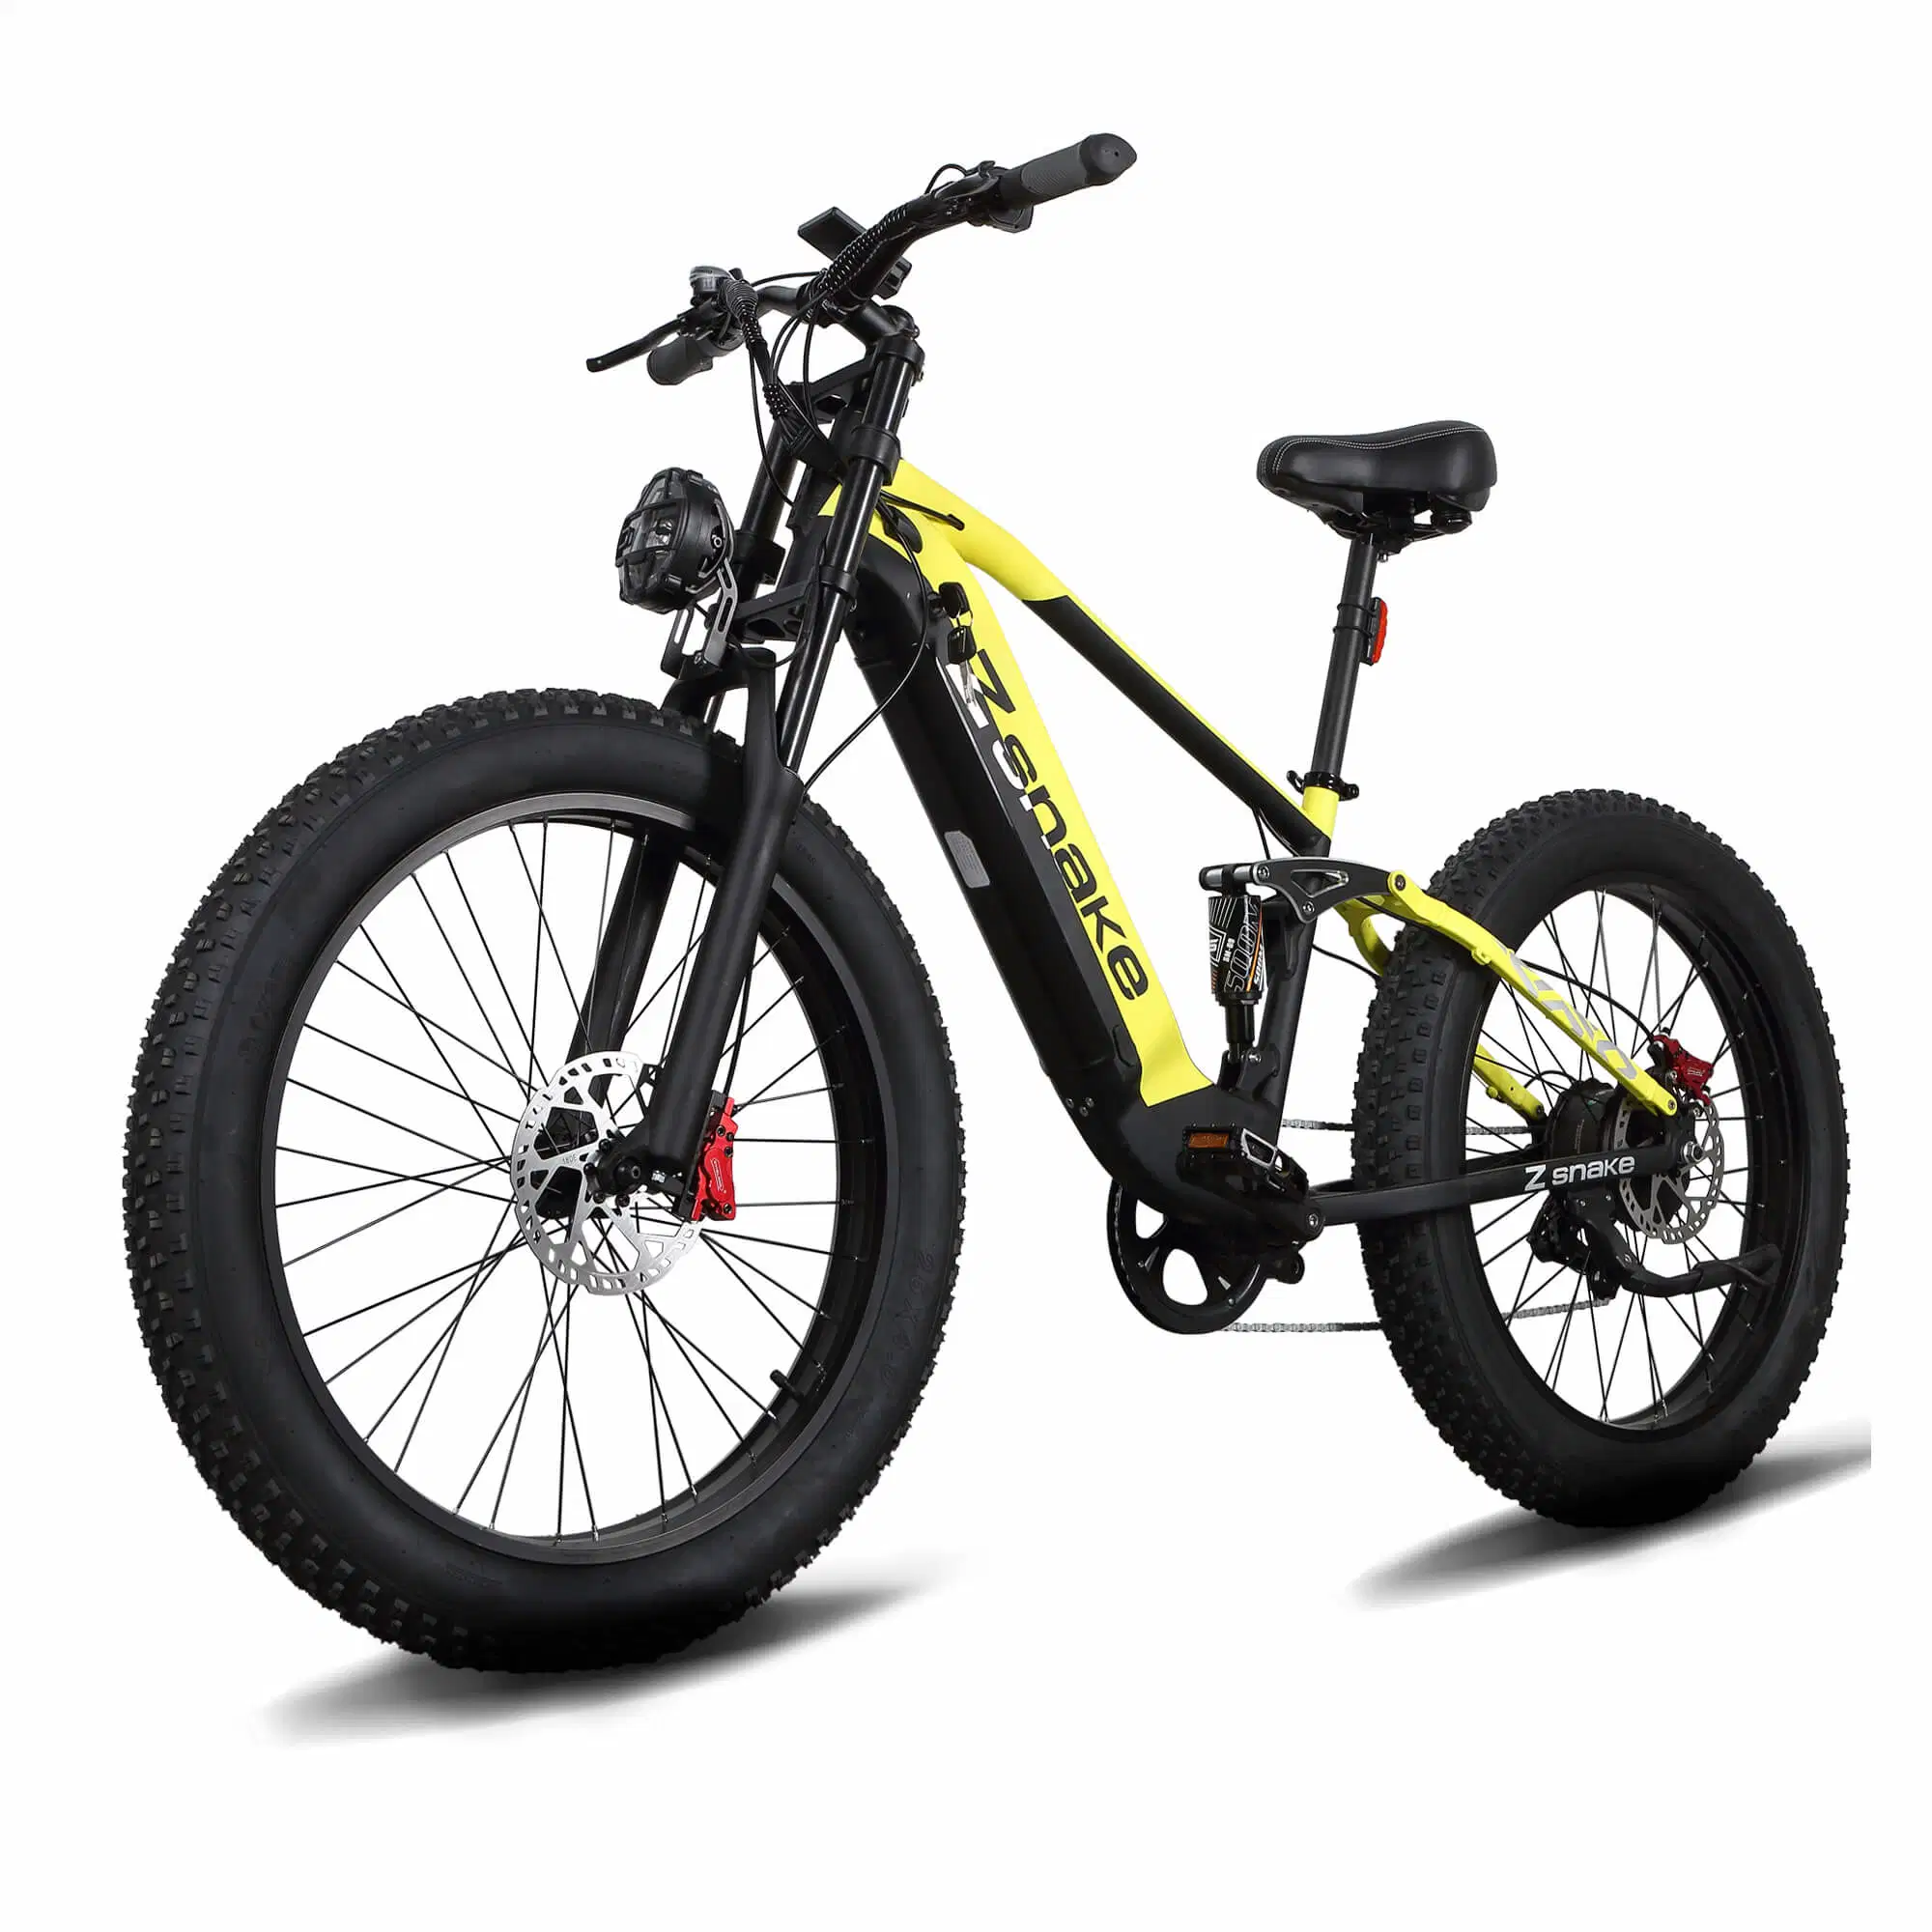 Zsnake 750W быстро электрический Велосипед для взрослых 30 миль в час 48V 20A Литий ячейки 26-дюймовый жир дорожных шин вакуума и светодиодный дисплей